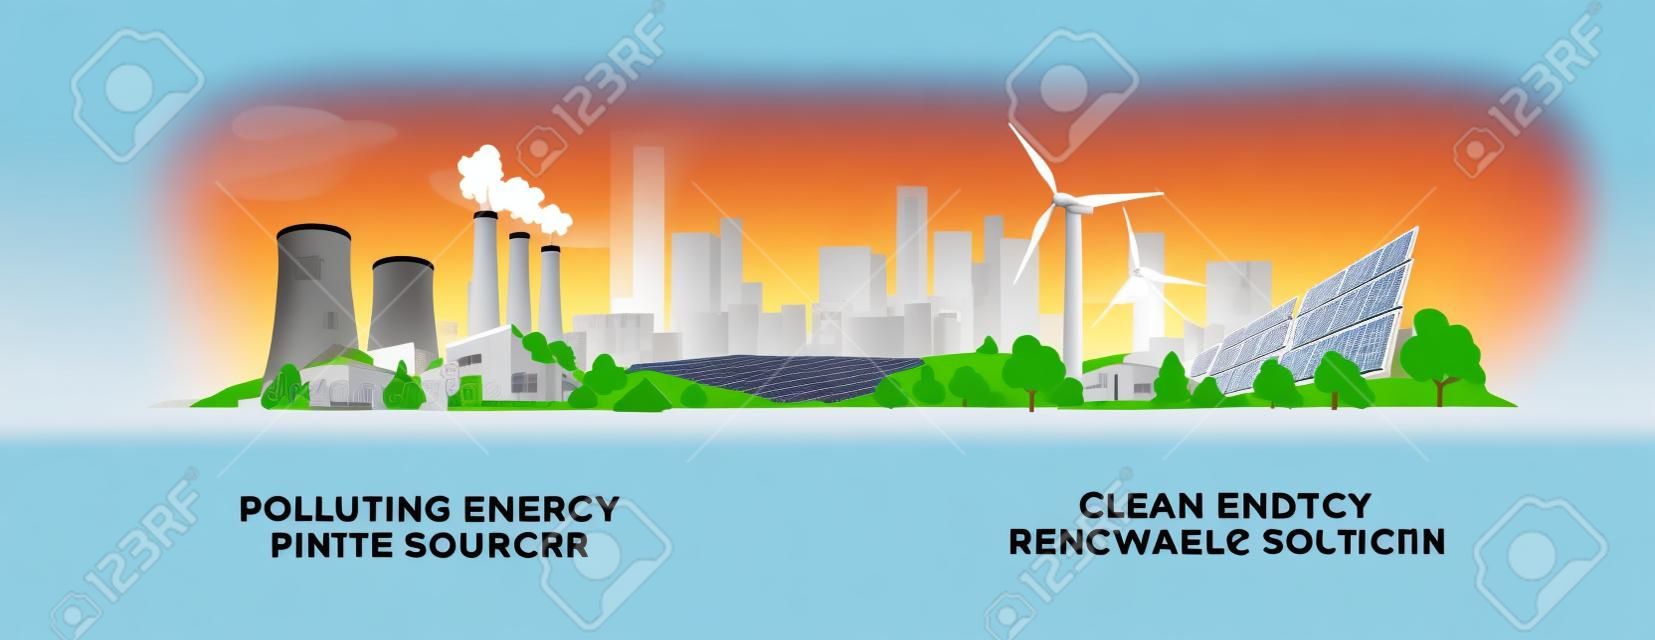 Illustration vectorielle montrant une production d'électricité propre et polluante. Pollution du charbon thermique fossile et des centrales nucléaires par rapport aux énergies renouvelables des panneaux solaires et des éoliennes propres.